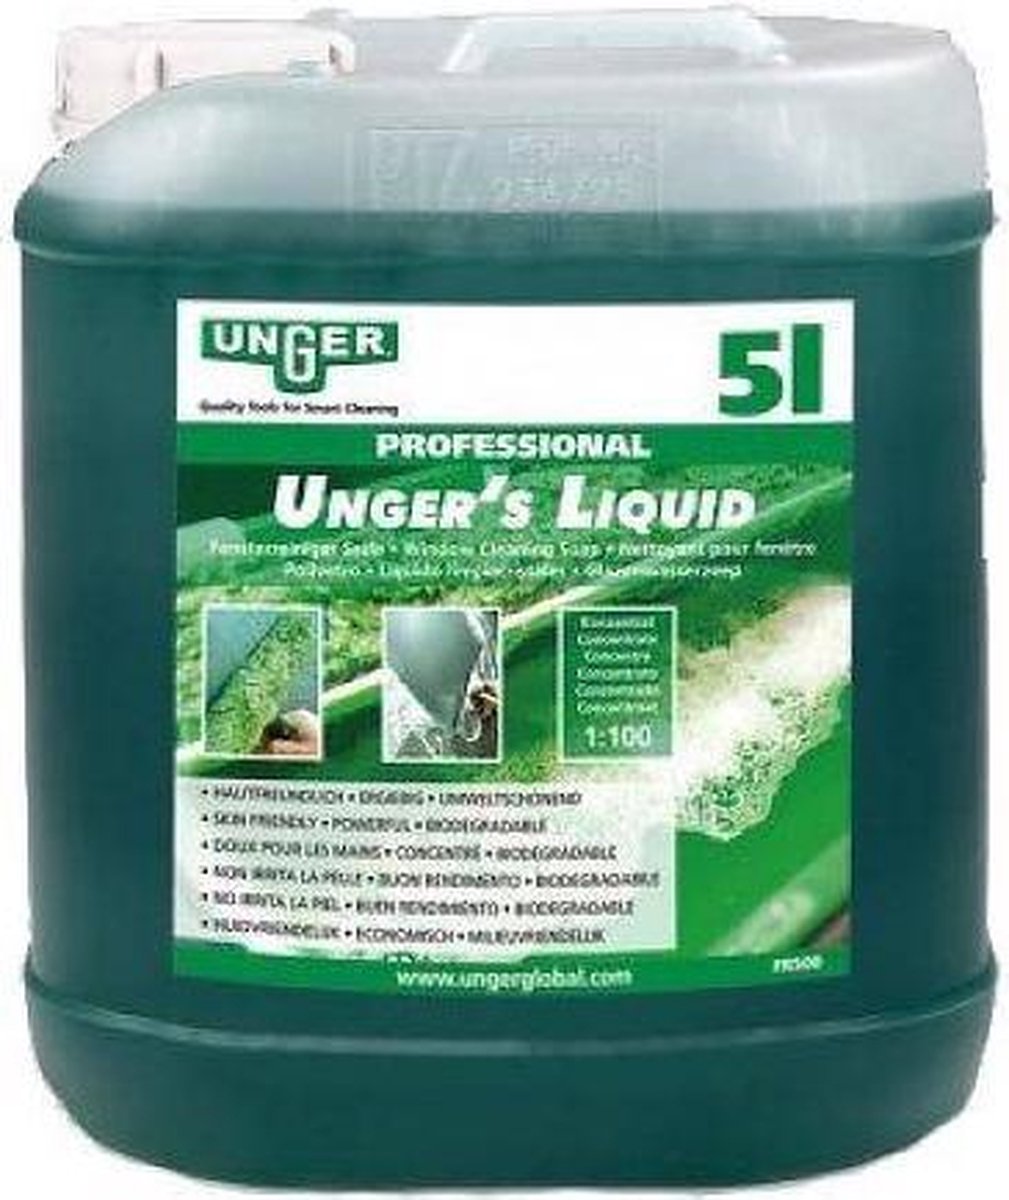 Unger Glazenwasserszeep  5 liter  - professioneel - Unger